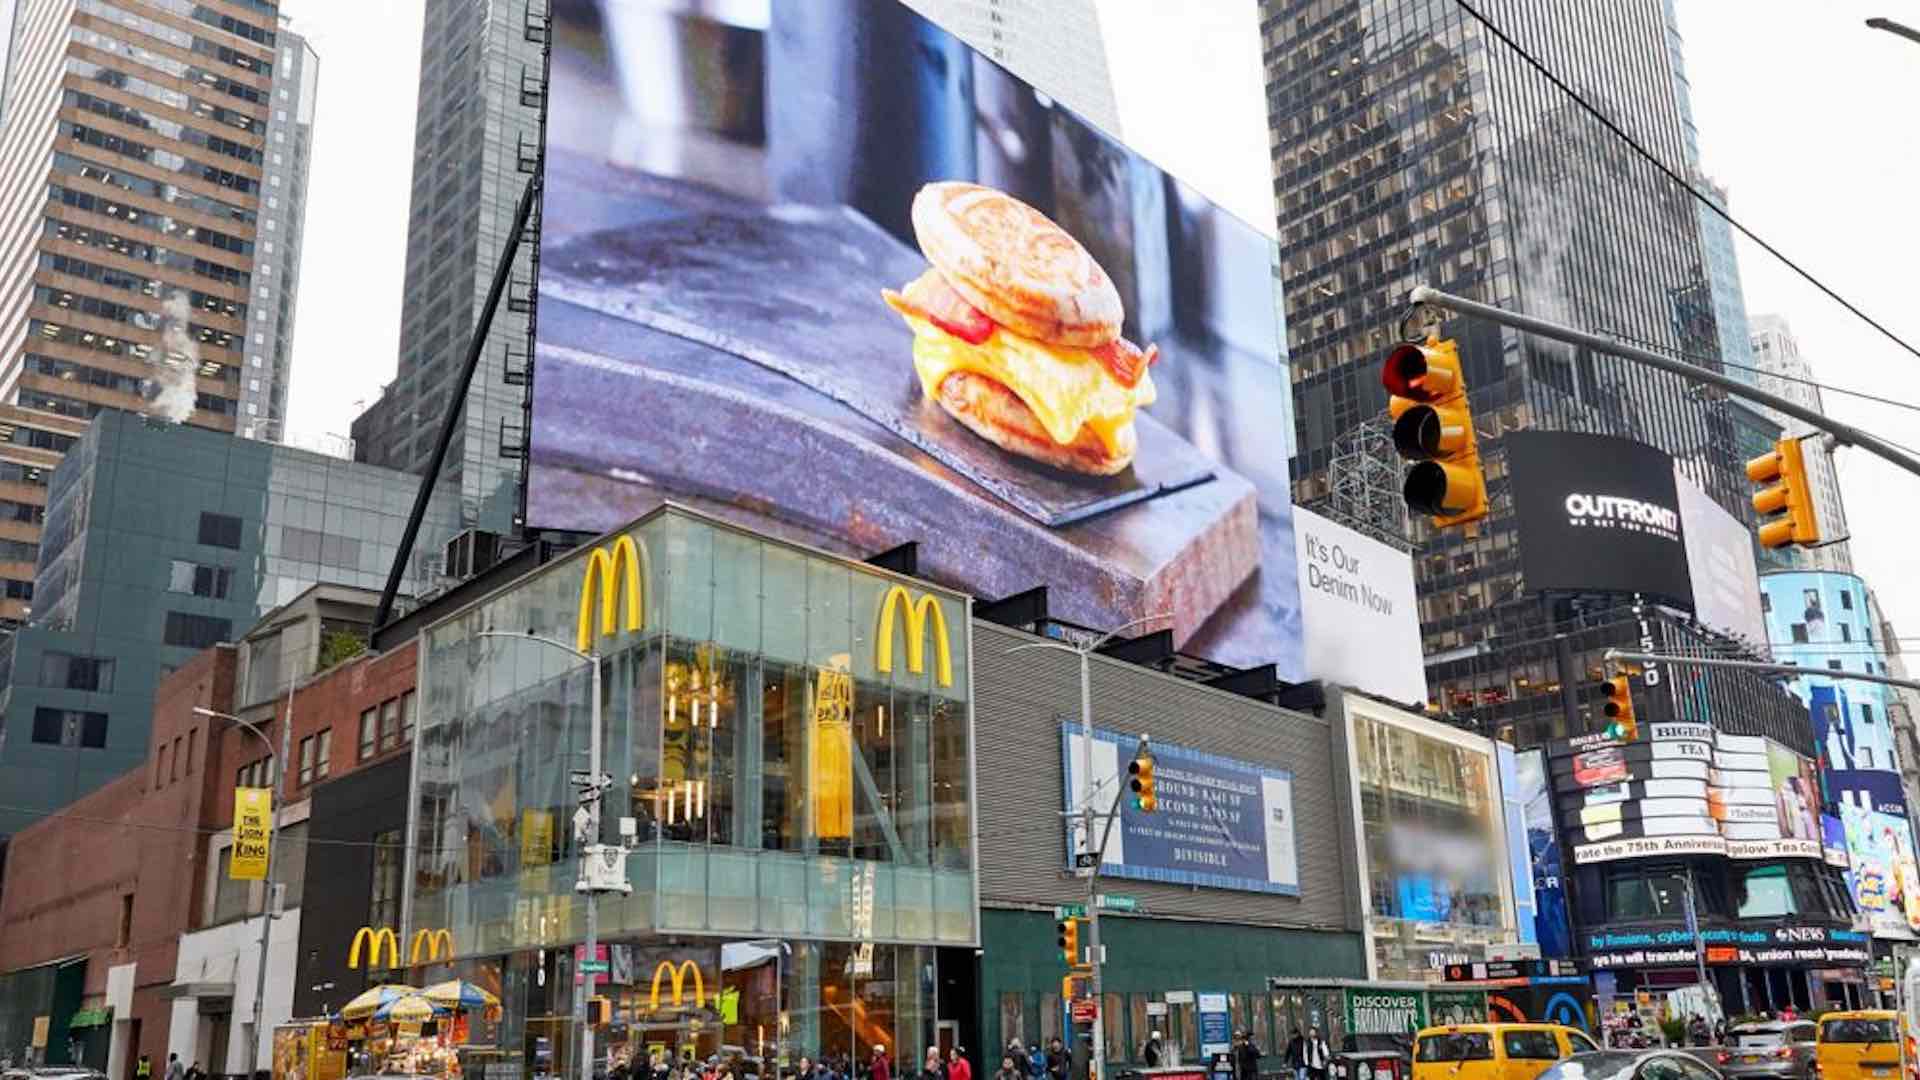 ماكدونالدز تعتزم افتتاح 10 آلاف متجر بحلول عام 2027